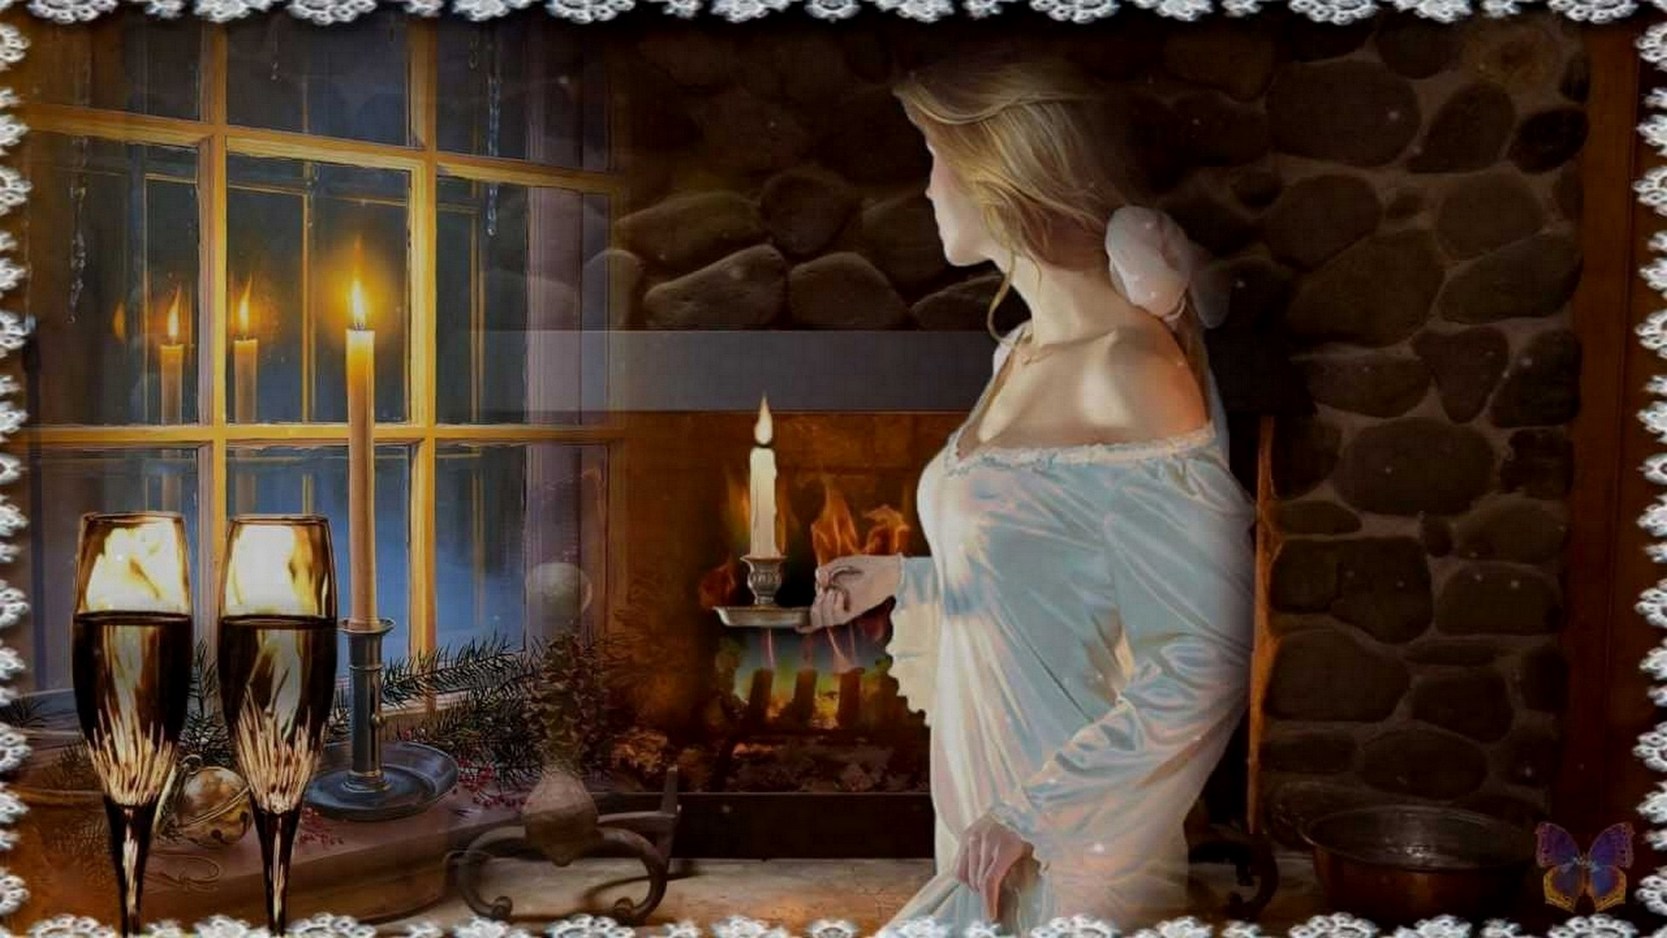 До самого позднего вечера. Девушка со свечой у окна. Окно вечер. Вечер за окном. Девушка со свечой.